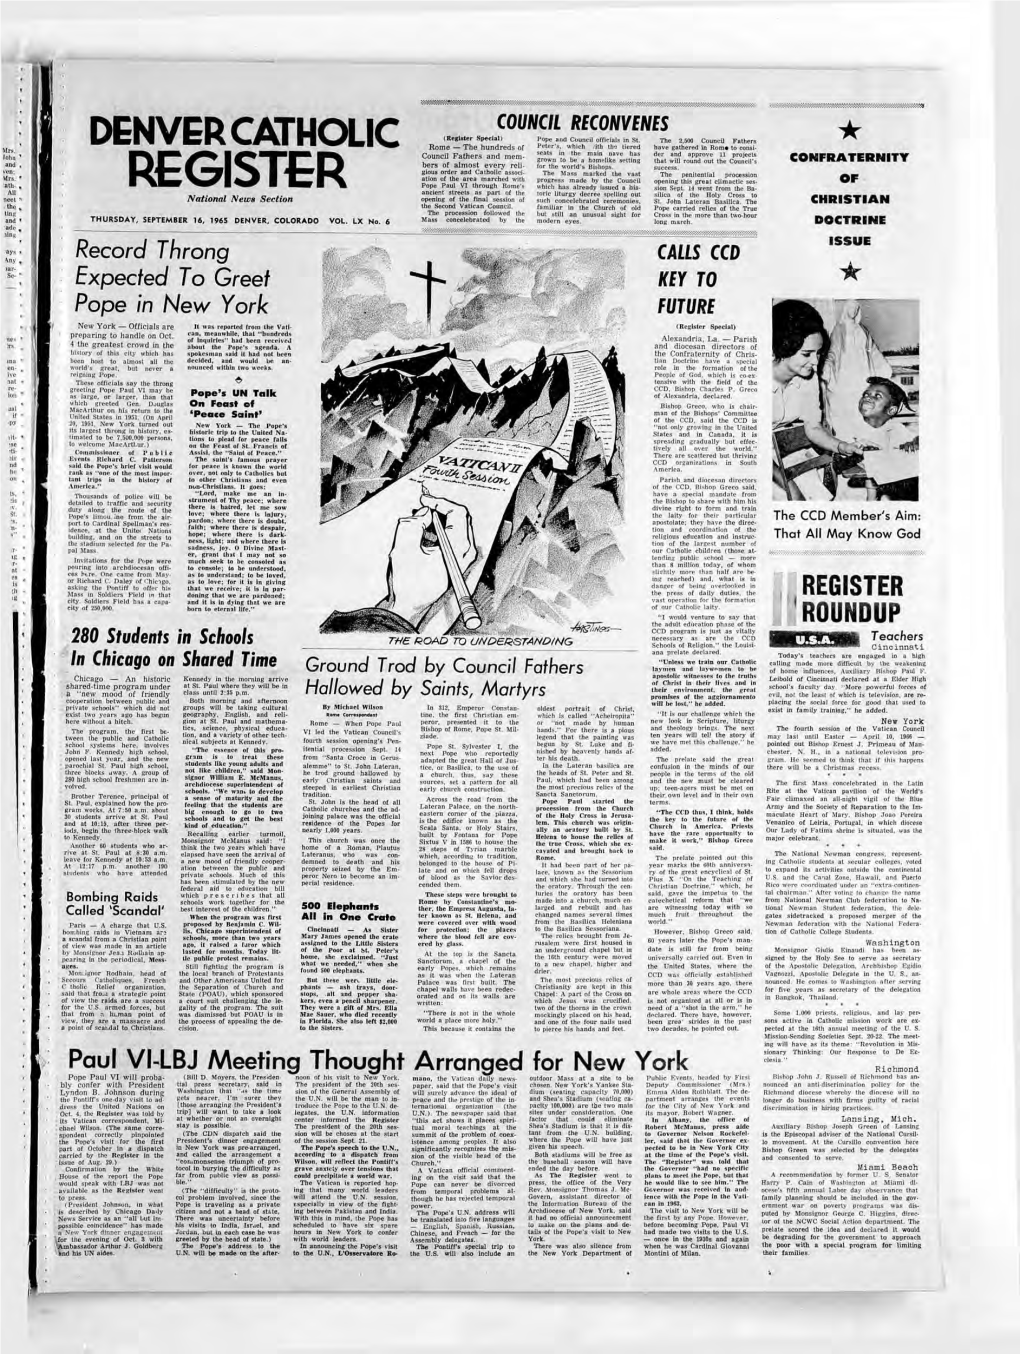 Denver Catholic Register September 16, 1965 Faith, 366 Fifth Avenue, New York, N